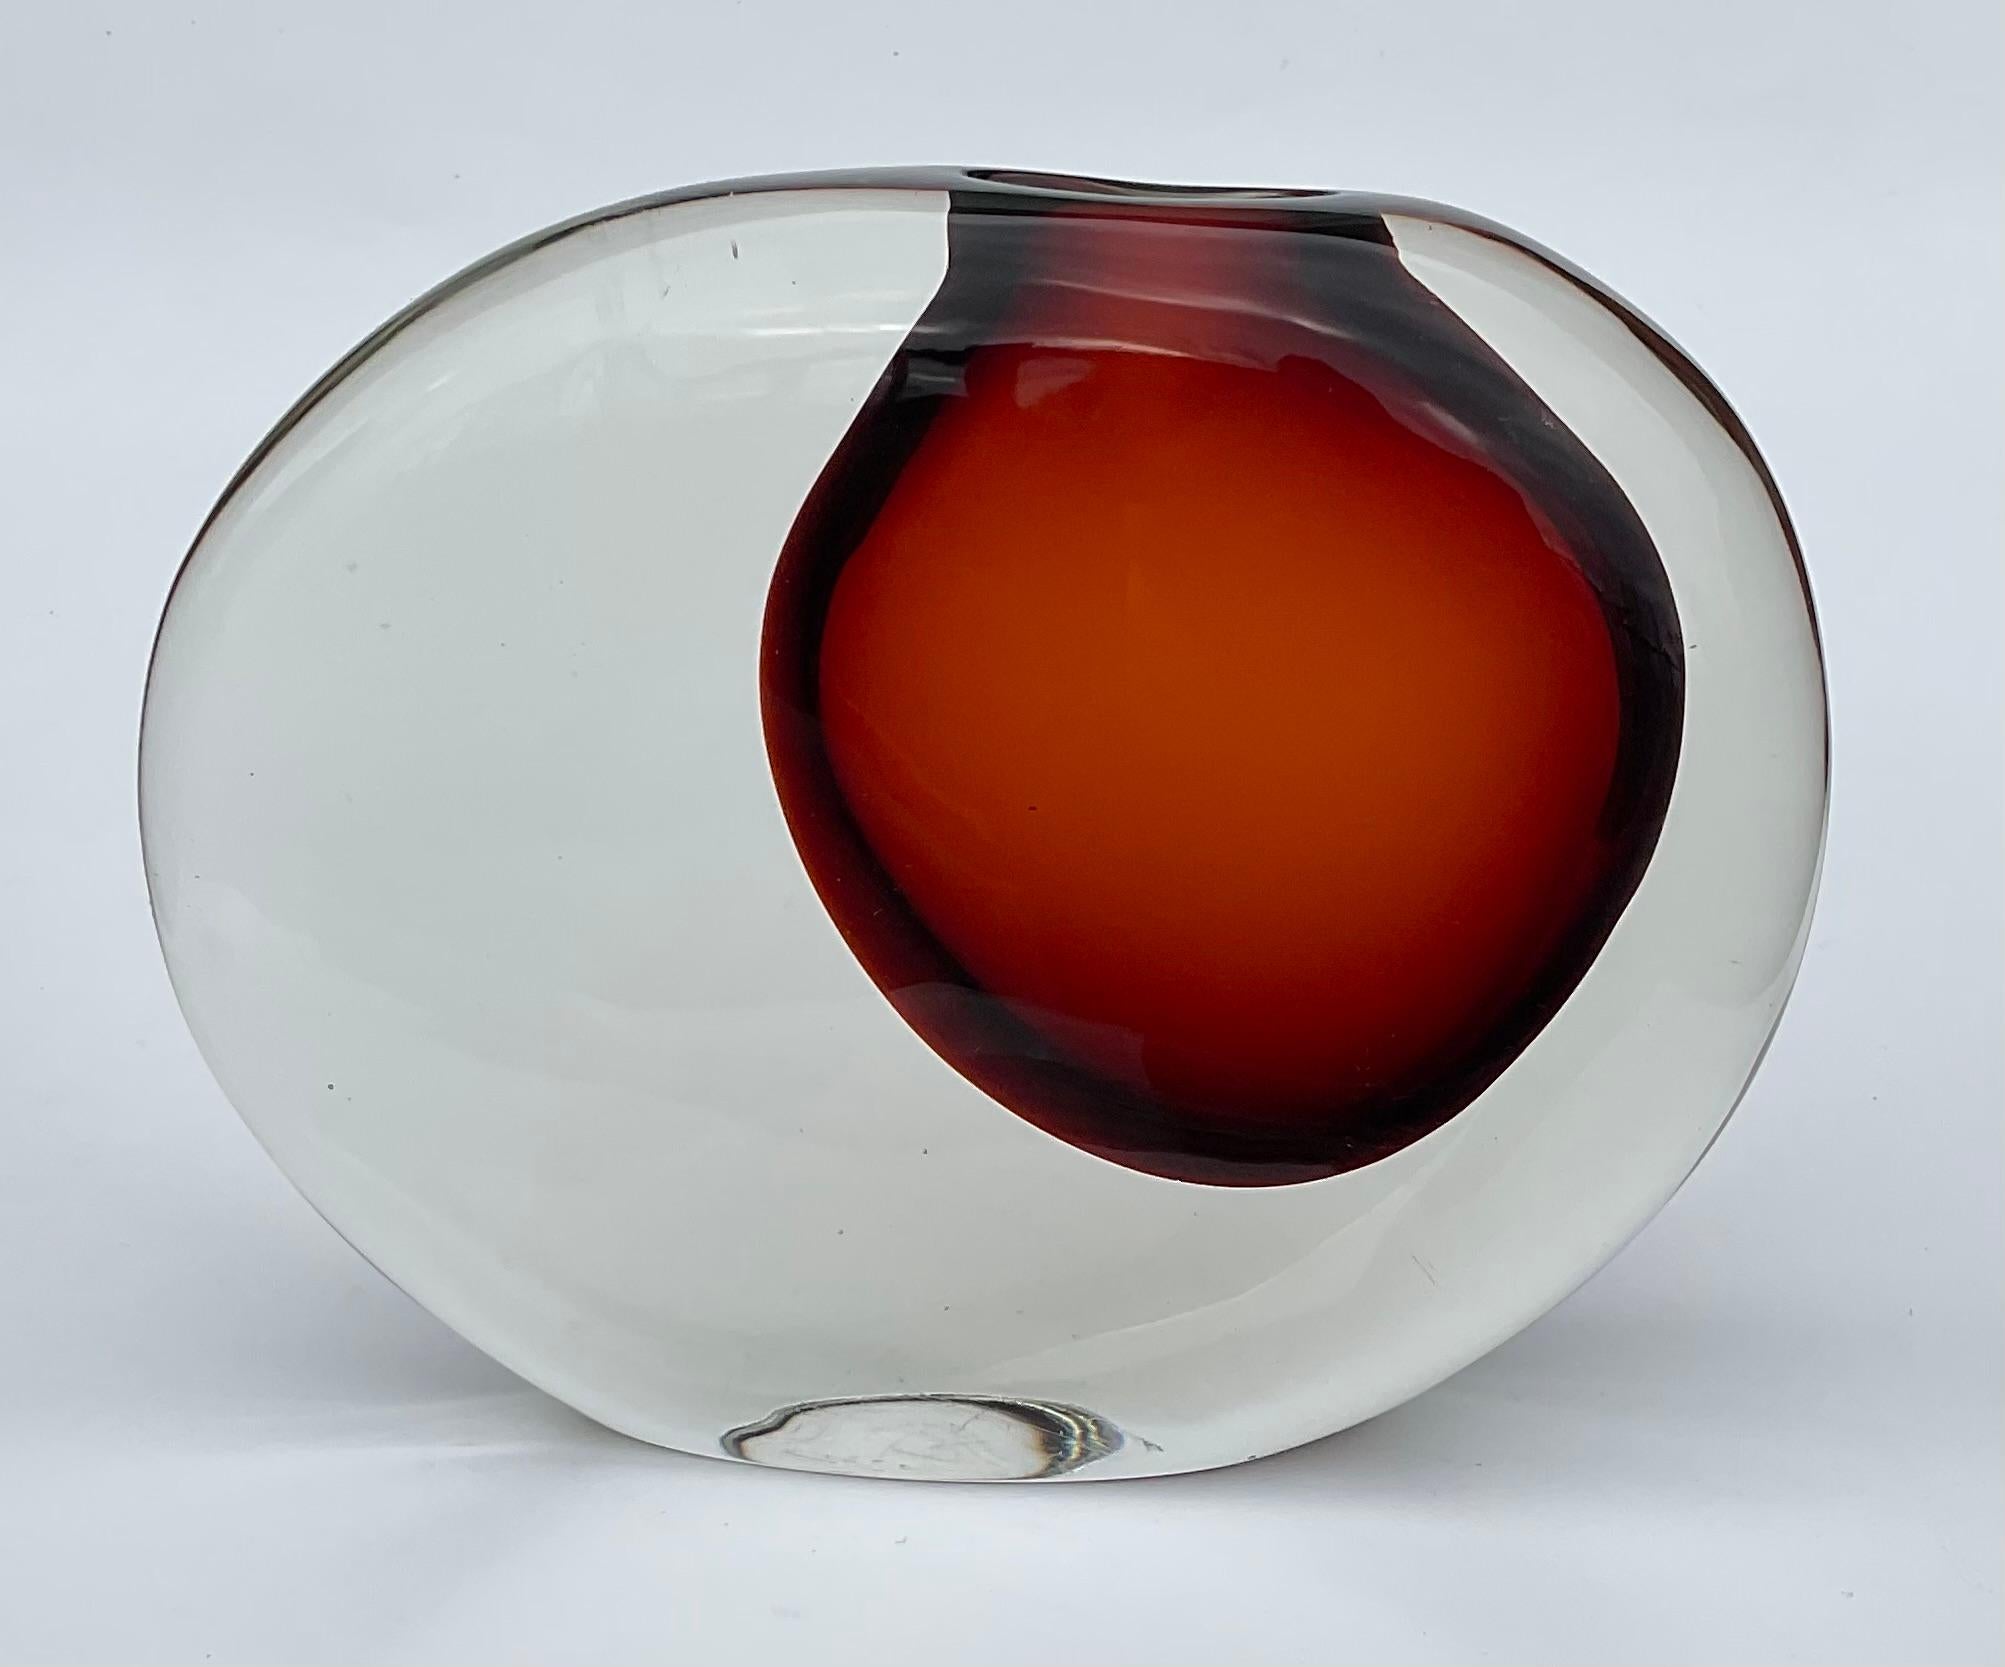 Antonio Da Ros Cenedese Murano Sasso Stone Vase Circa 1970 in vibrant red  In Good Condition For Sale In Ann Arbor, MI